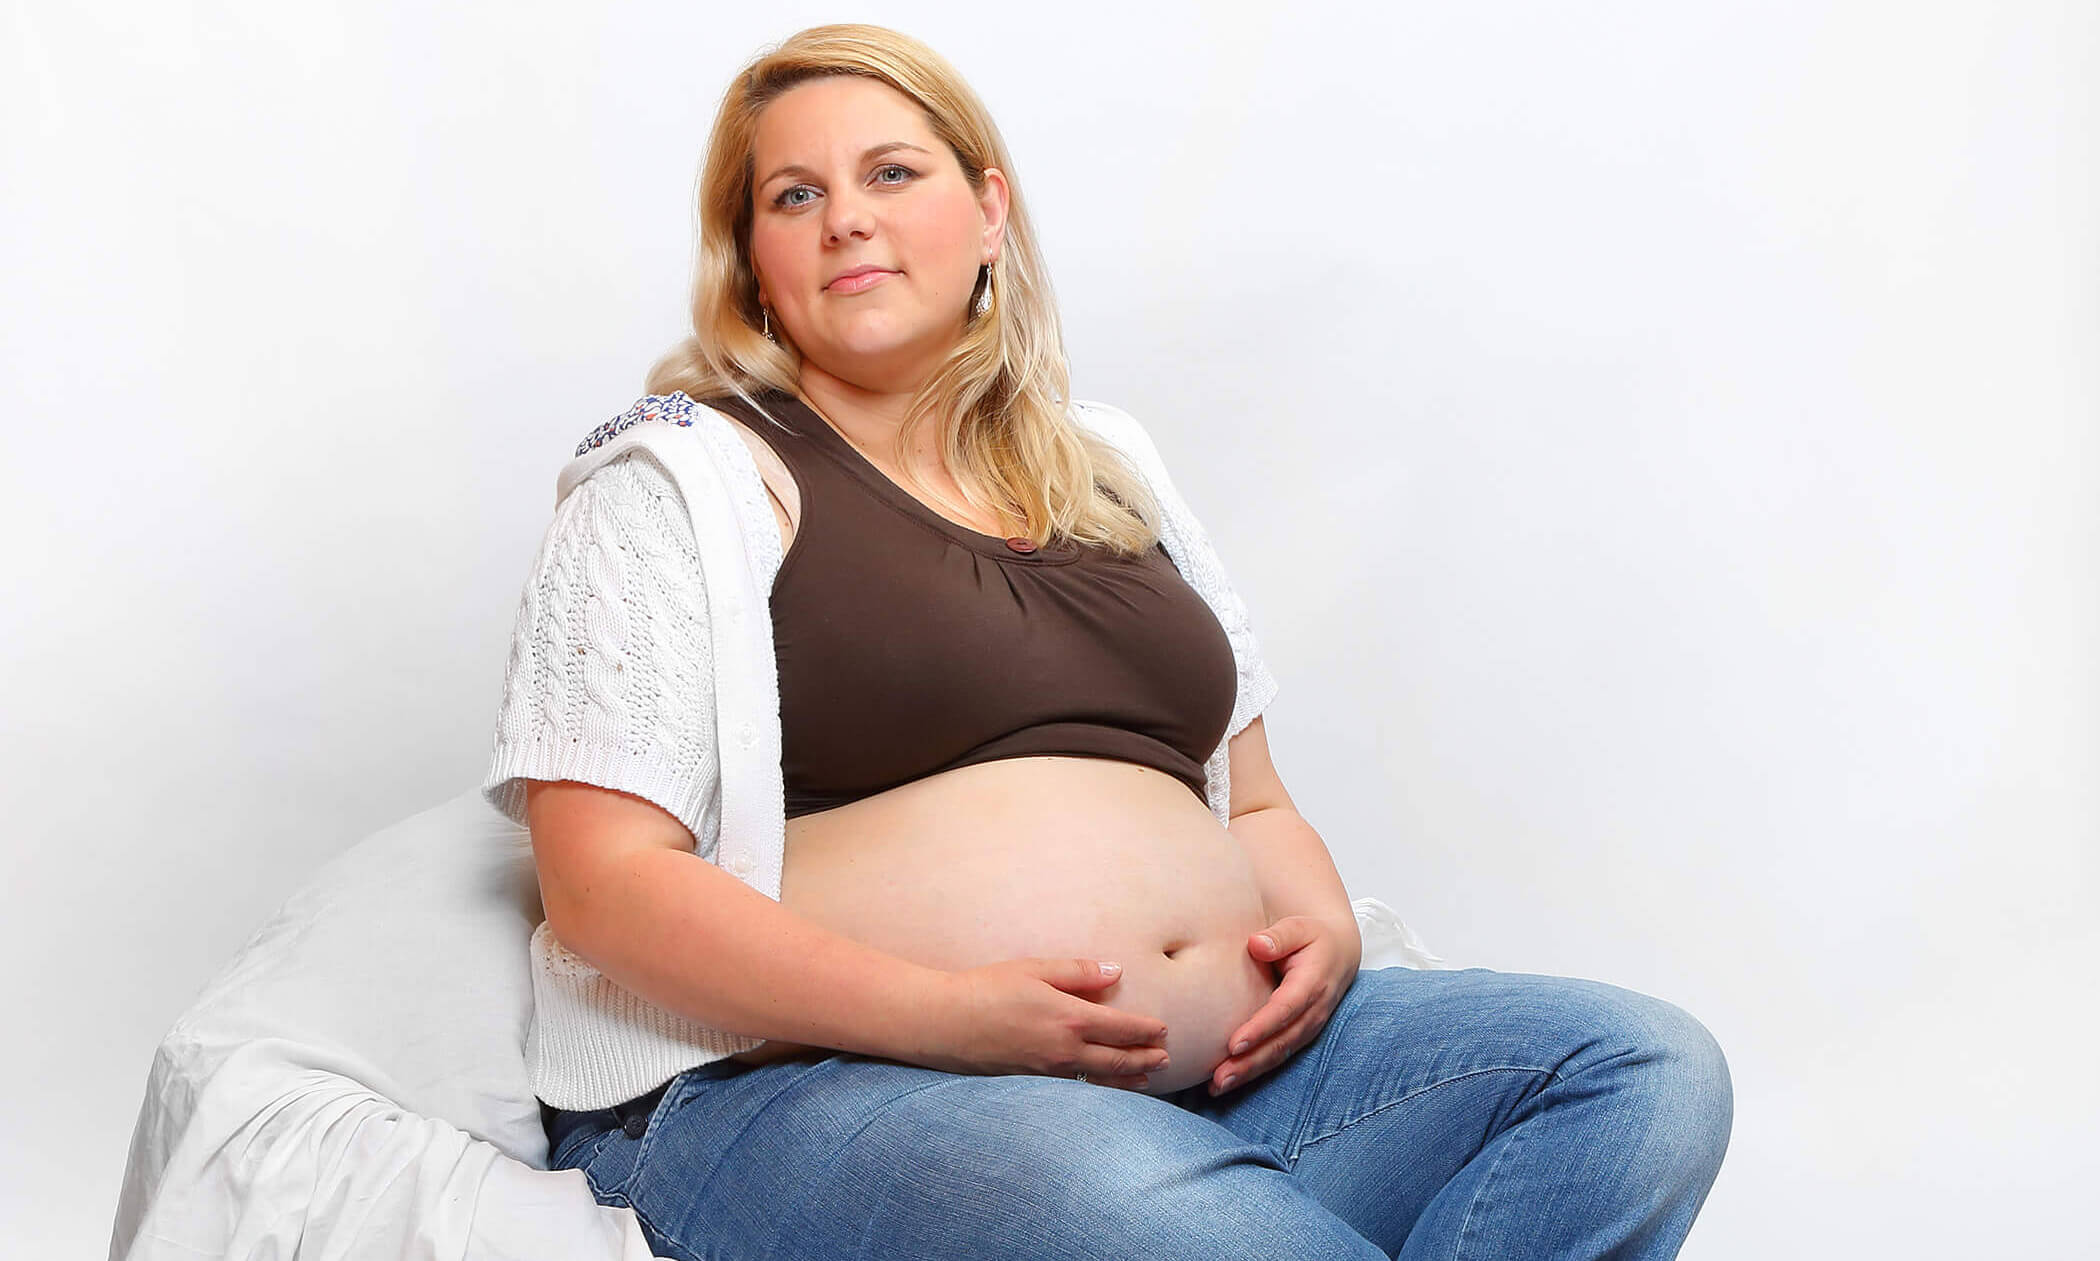 Dieta para embarazadas con sobrepeso